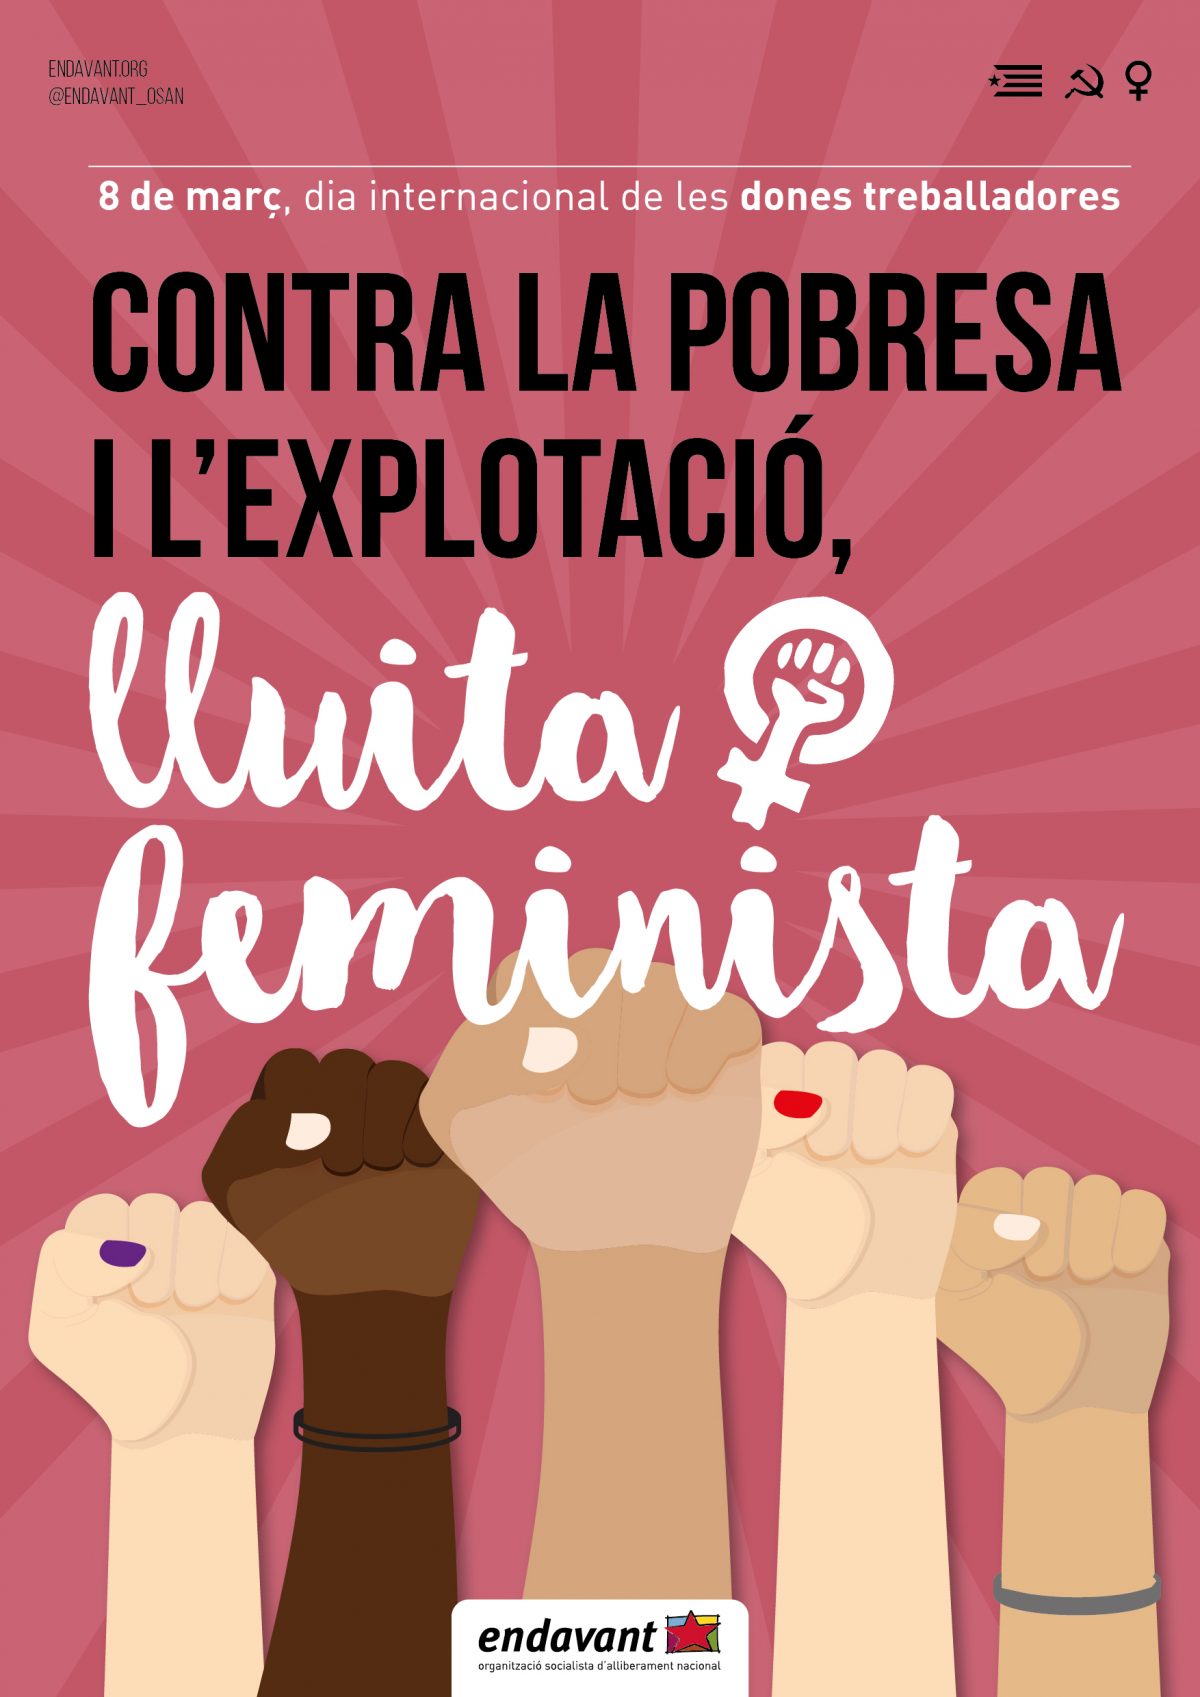 8 Març dia internacional de les dones treballadores. Contra l’explotació i la pobresa, lluita feminista!